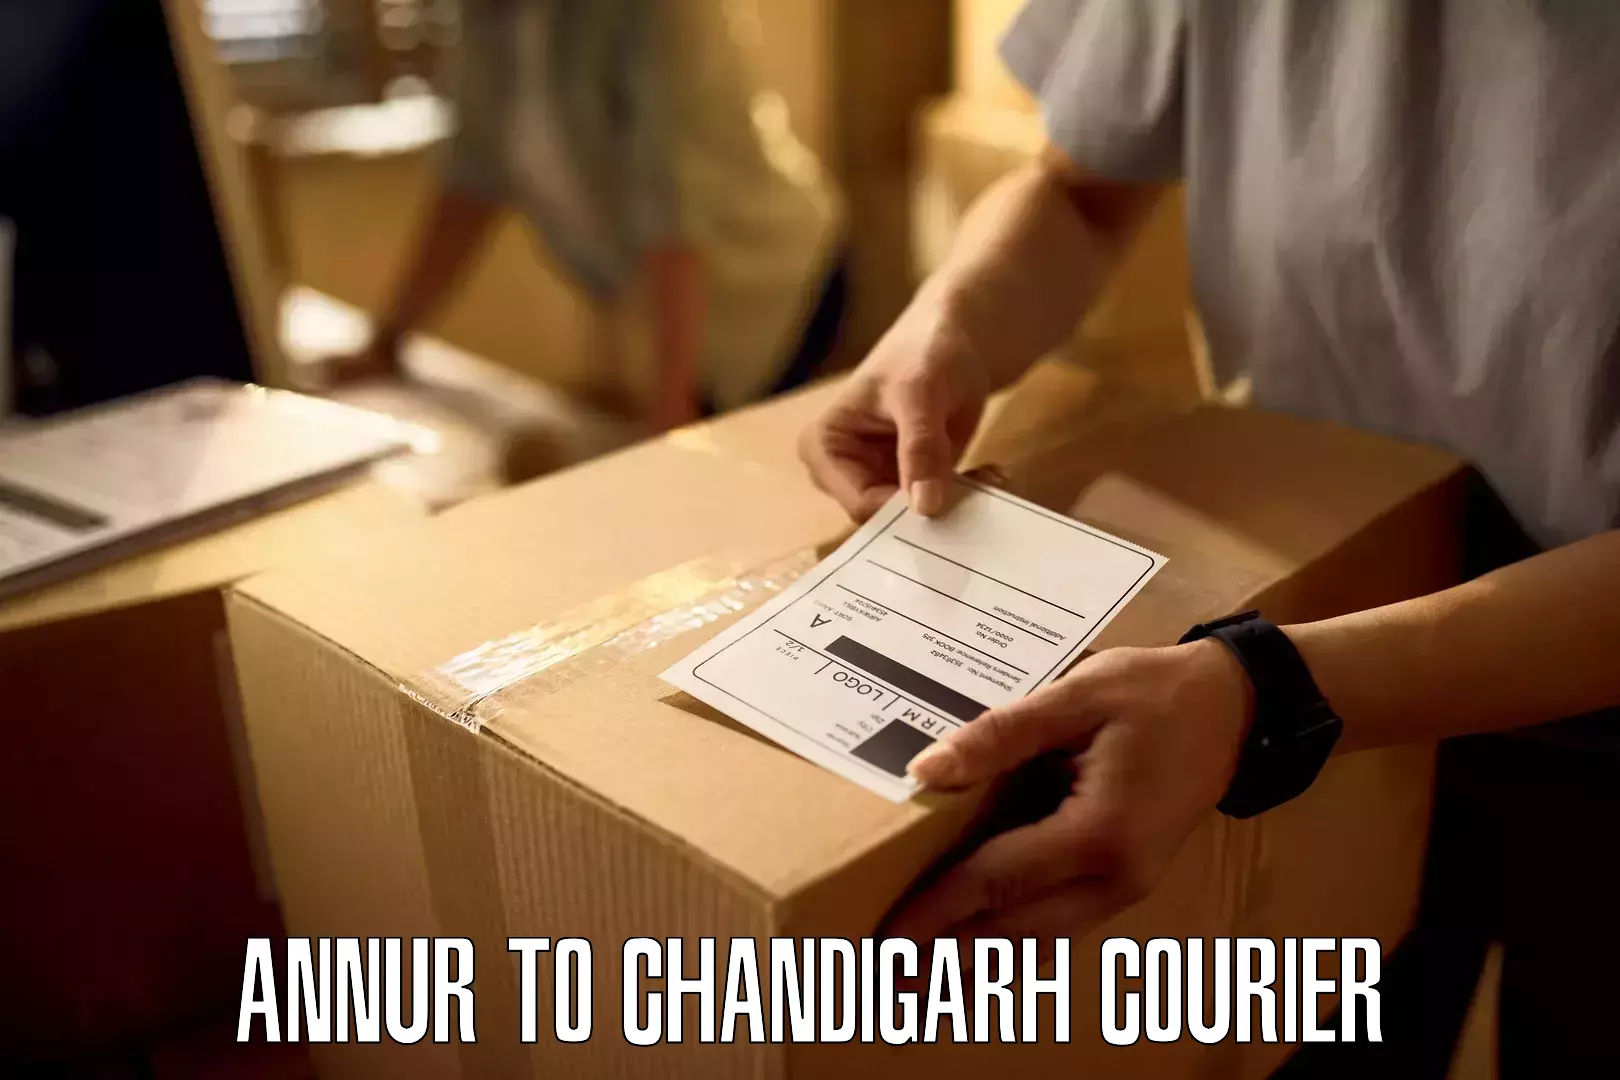 Cargo courier service Annur to Chandigarh